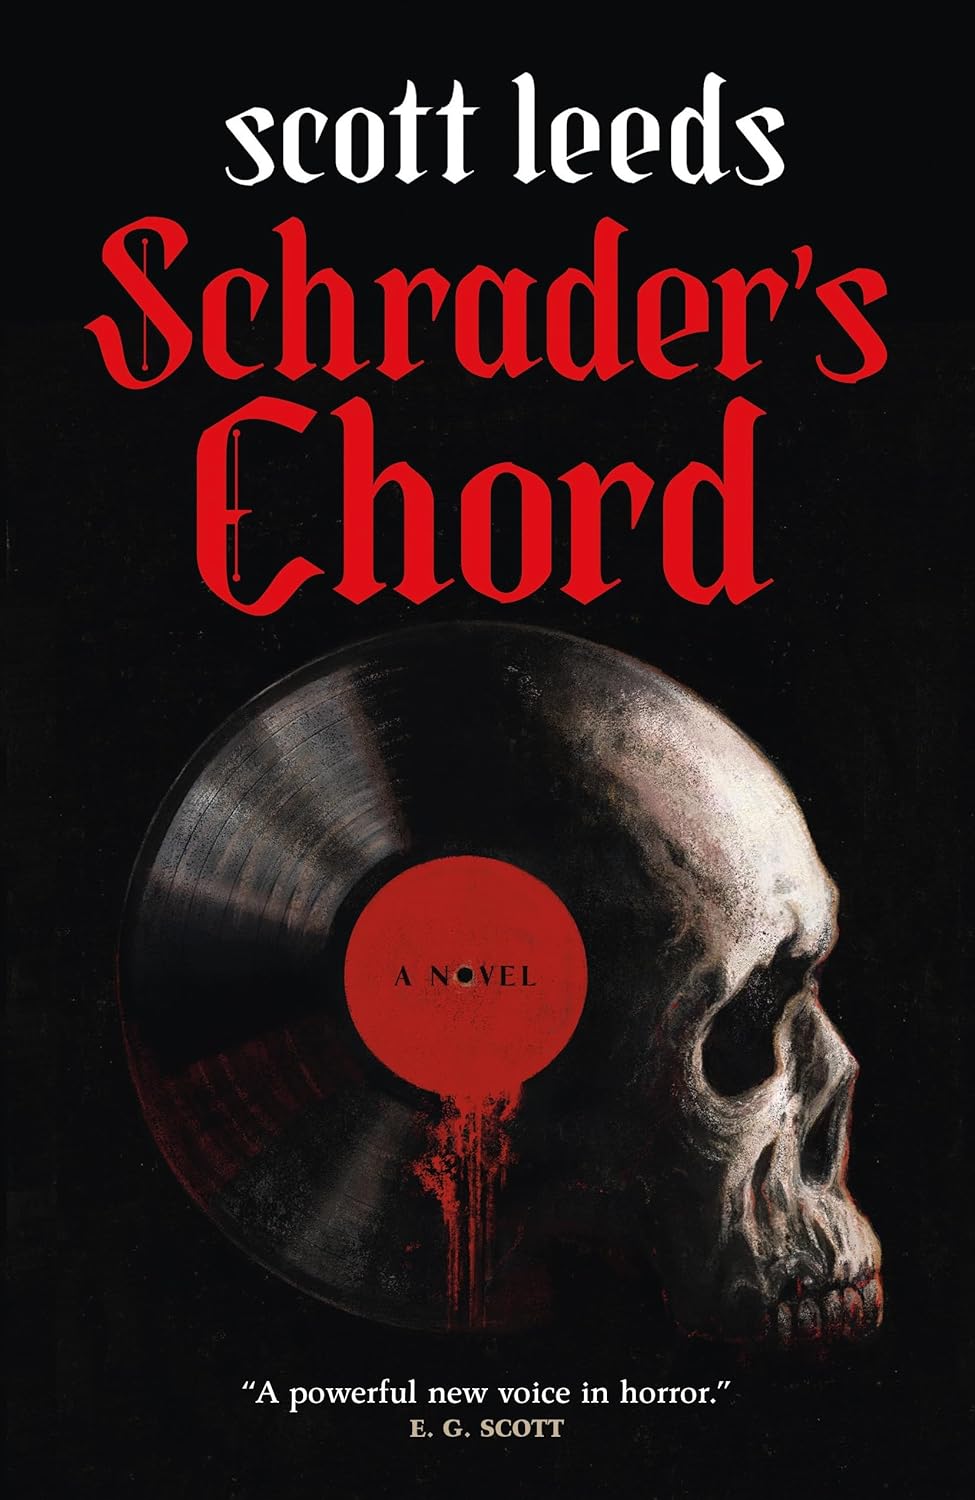 Schrader's Chord: A Novel